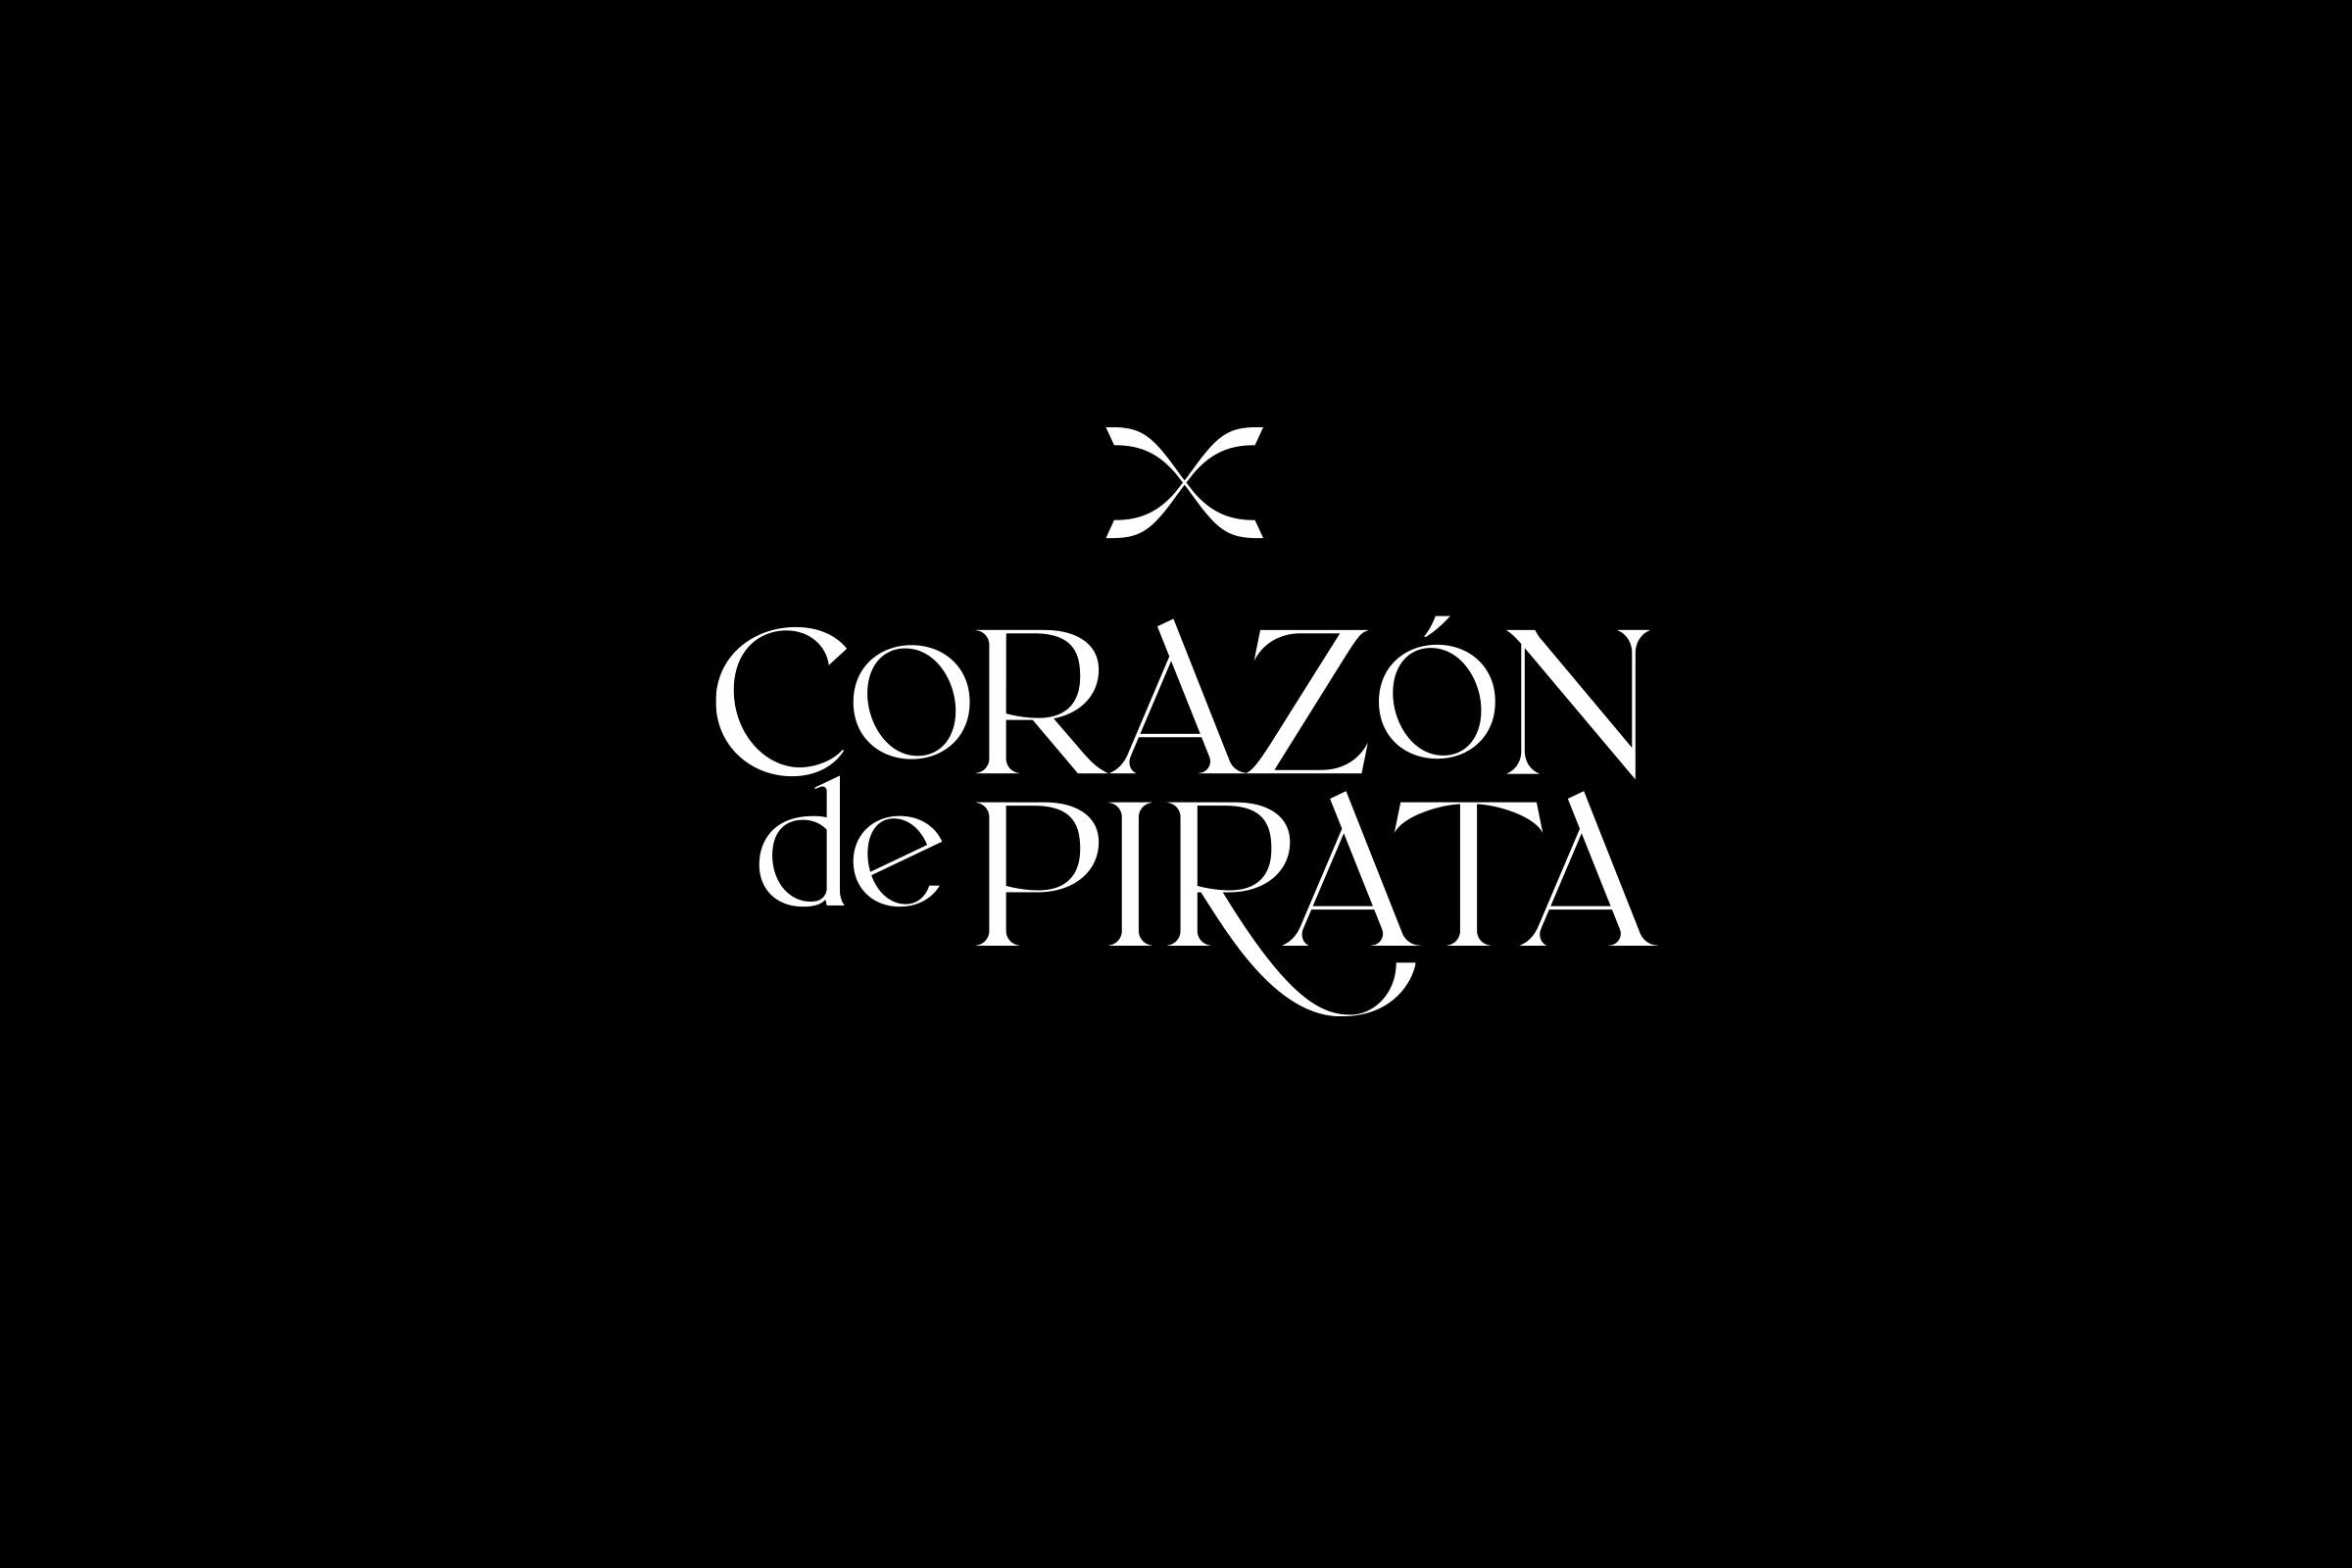 Corazon de pirata 2